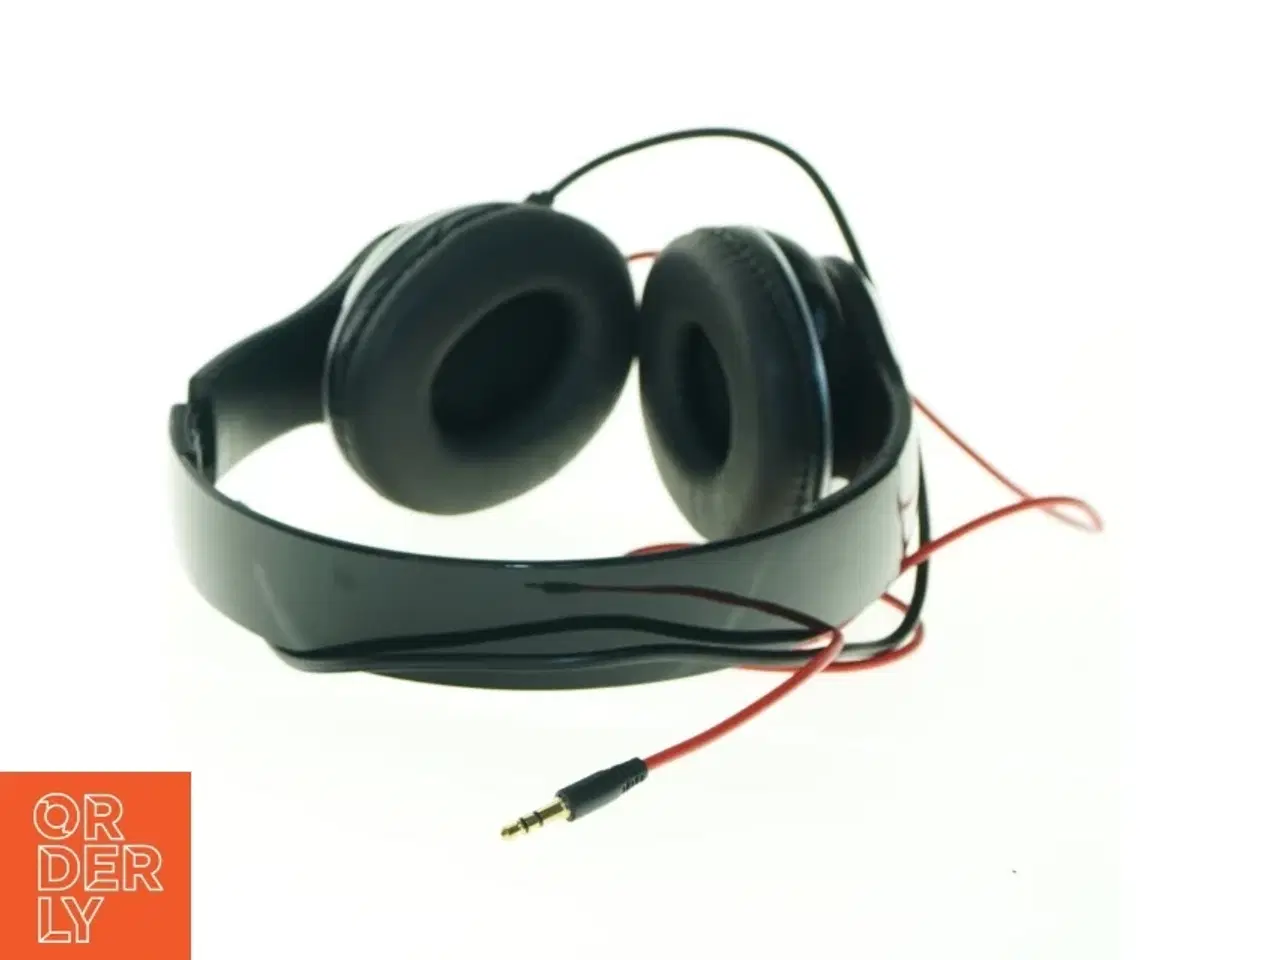 Billede 1 - Sorte hovedtelefoner med rødt kabel (str. 17 x 19 cm)